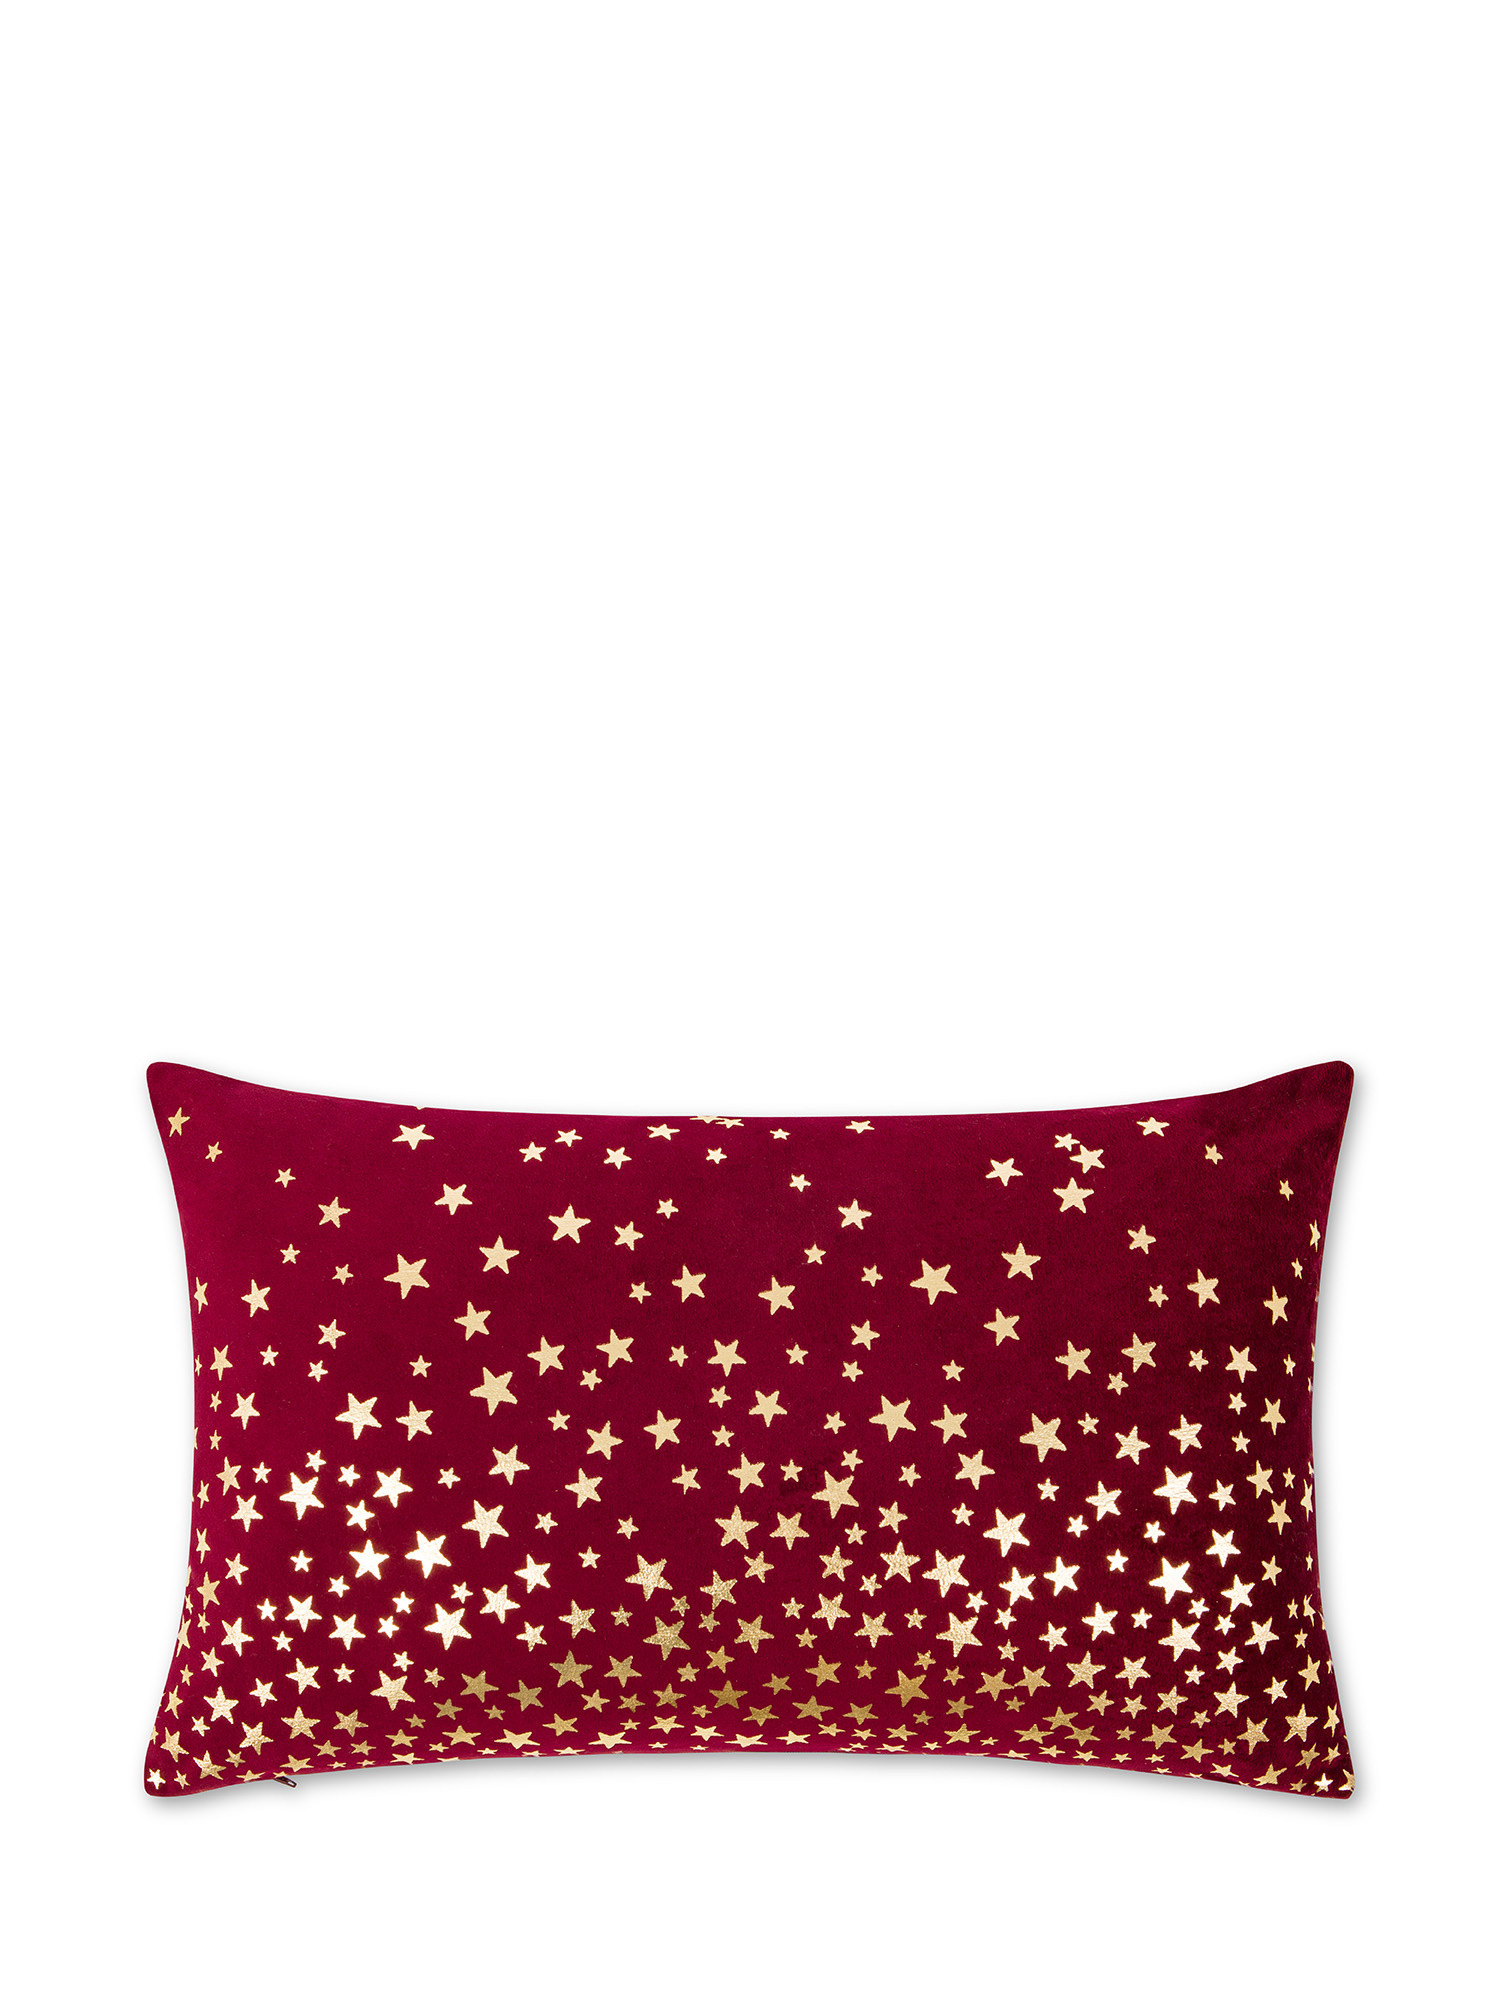 Star print velvet cushion 35x55cm, Dark Red, large image number 0